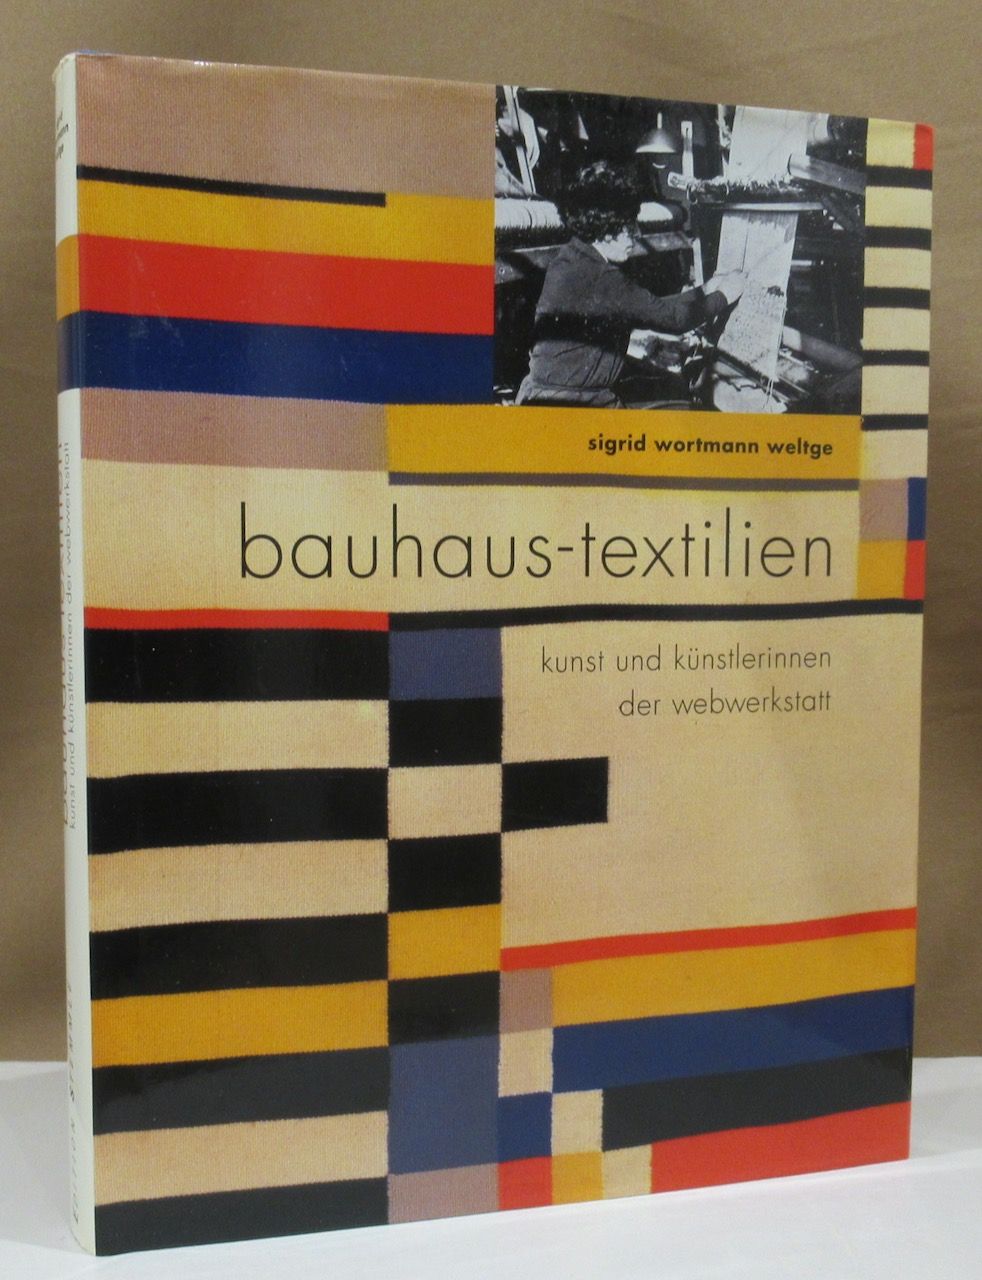 bauhaus-textilien. kunst und künstlerinnen der webwerkstatt. - Wortmann Weltge, Sigrid.